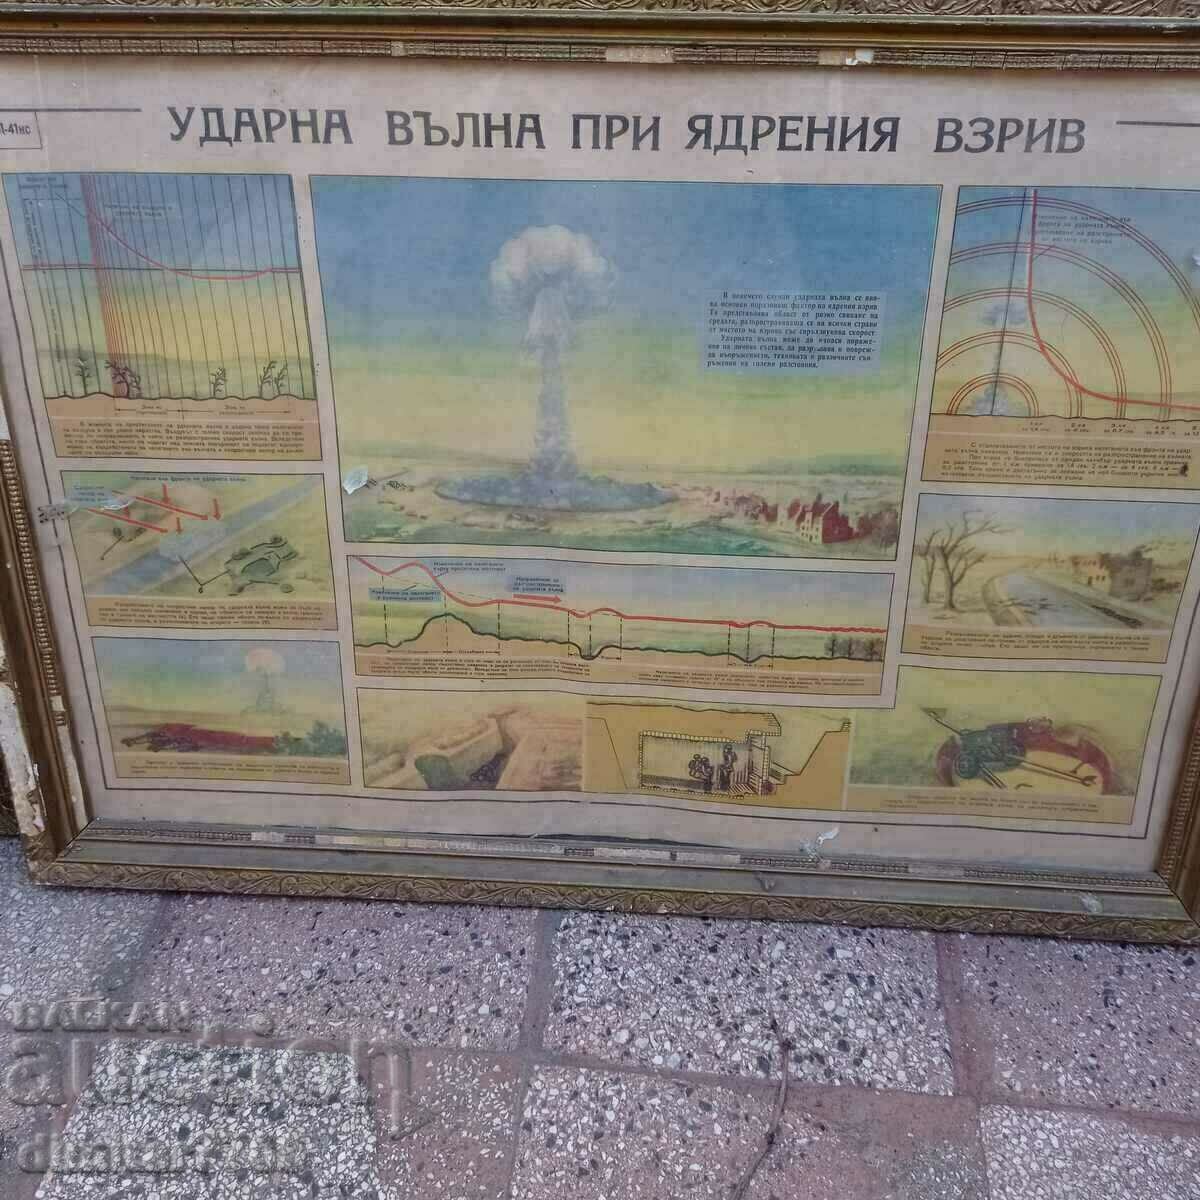 Πίνακας αφίσας με ωστικό κύμα πυρηνικής έκρηξης